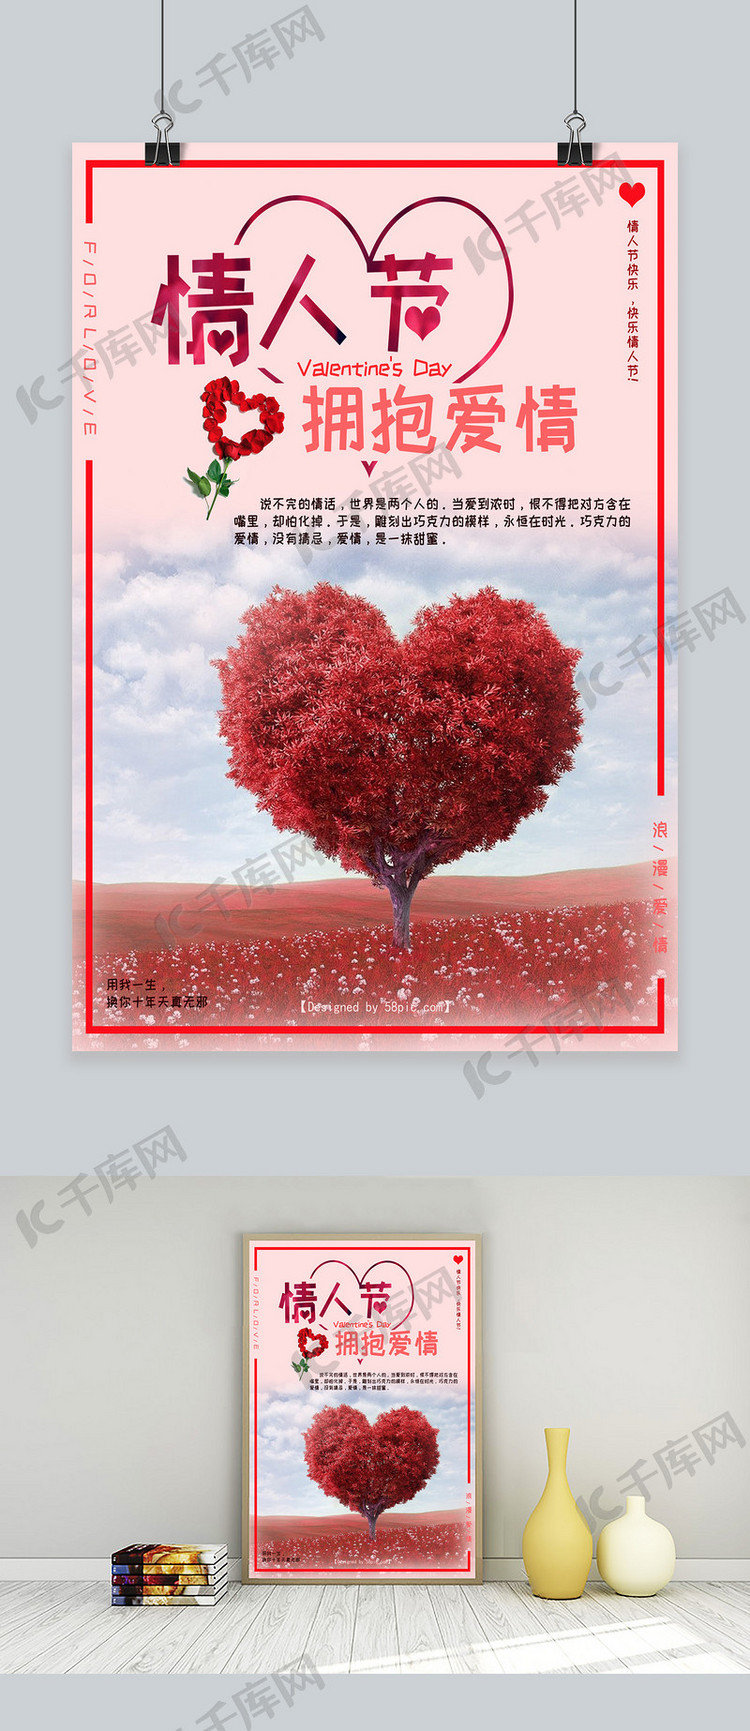 情人节促销爱情宣传海报设计